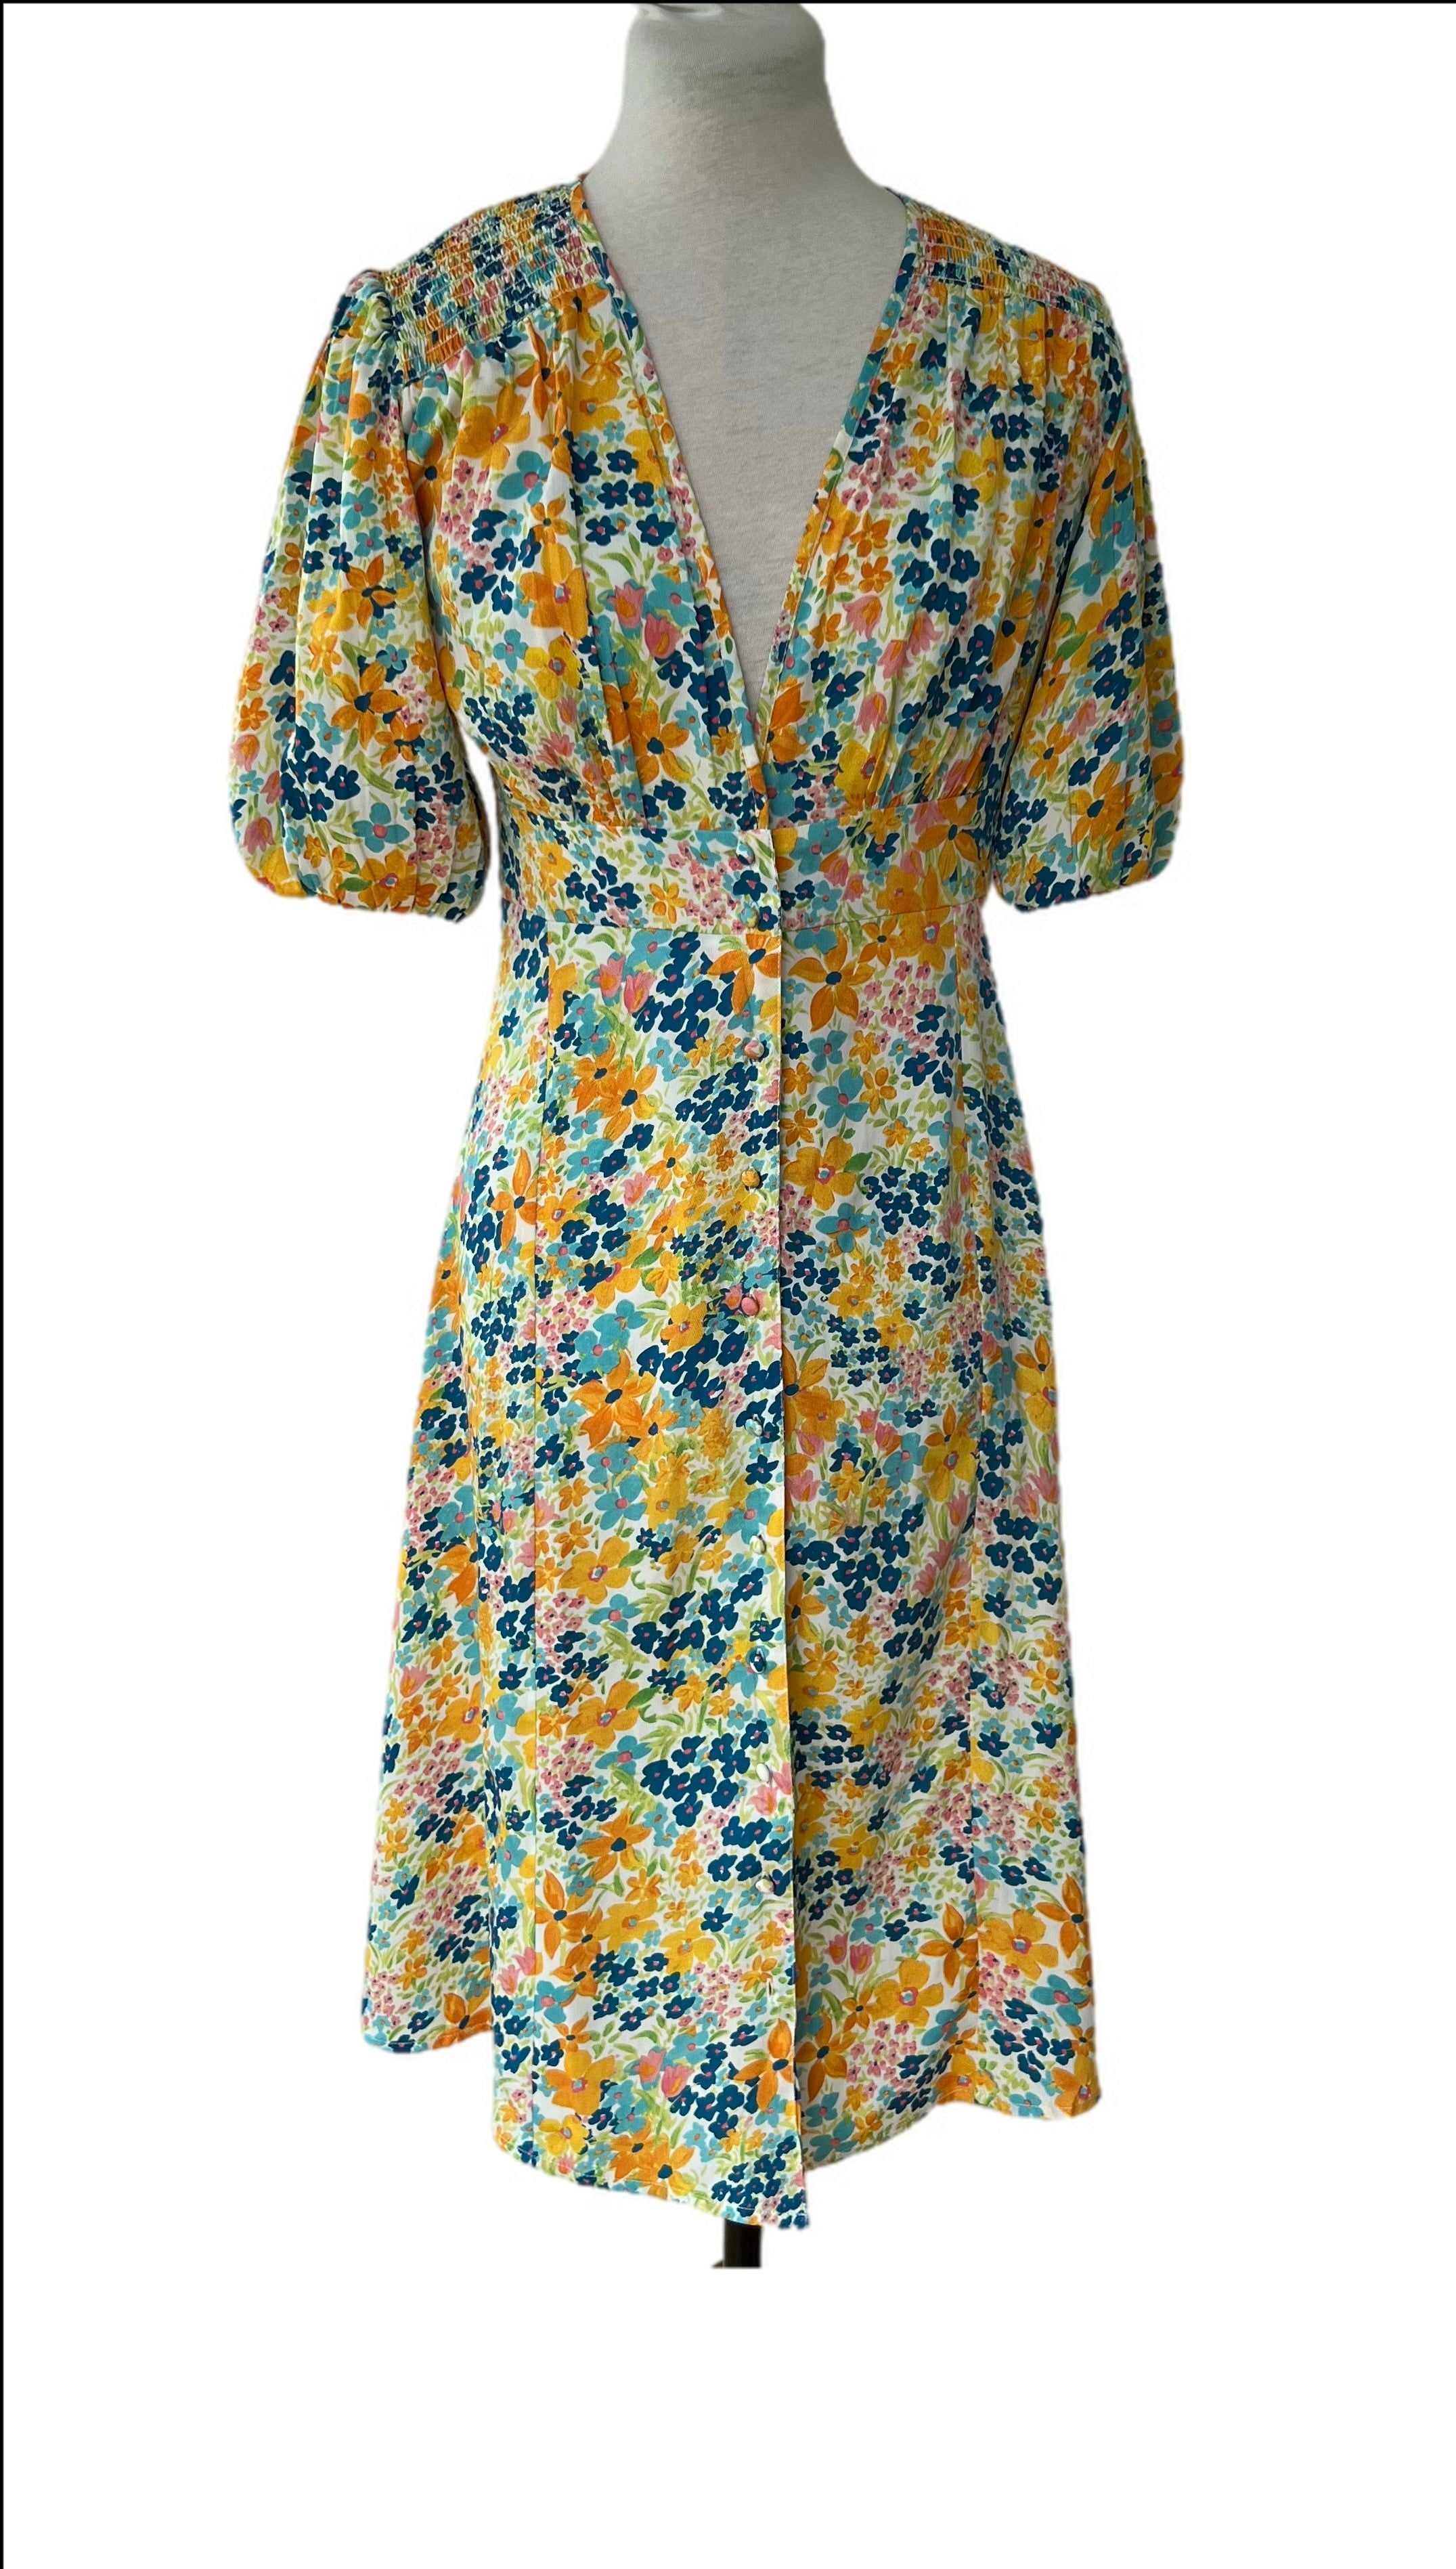 Vintage floral dress